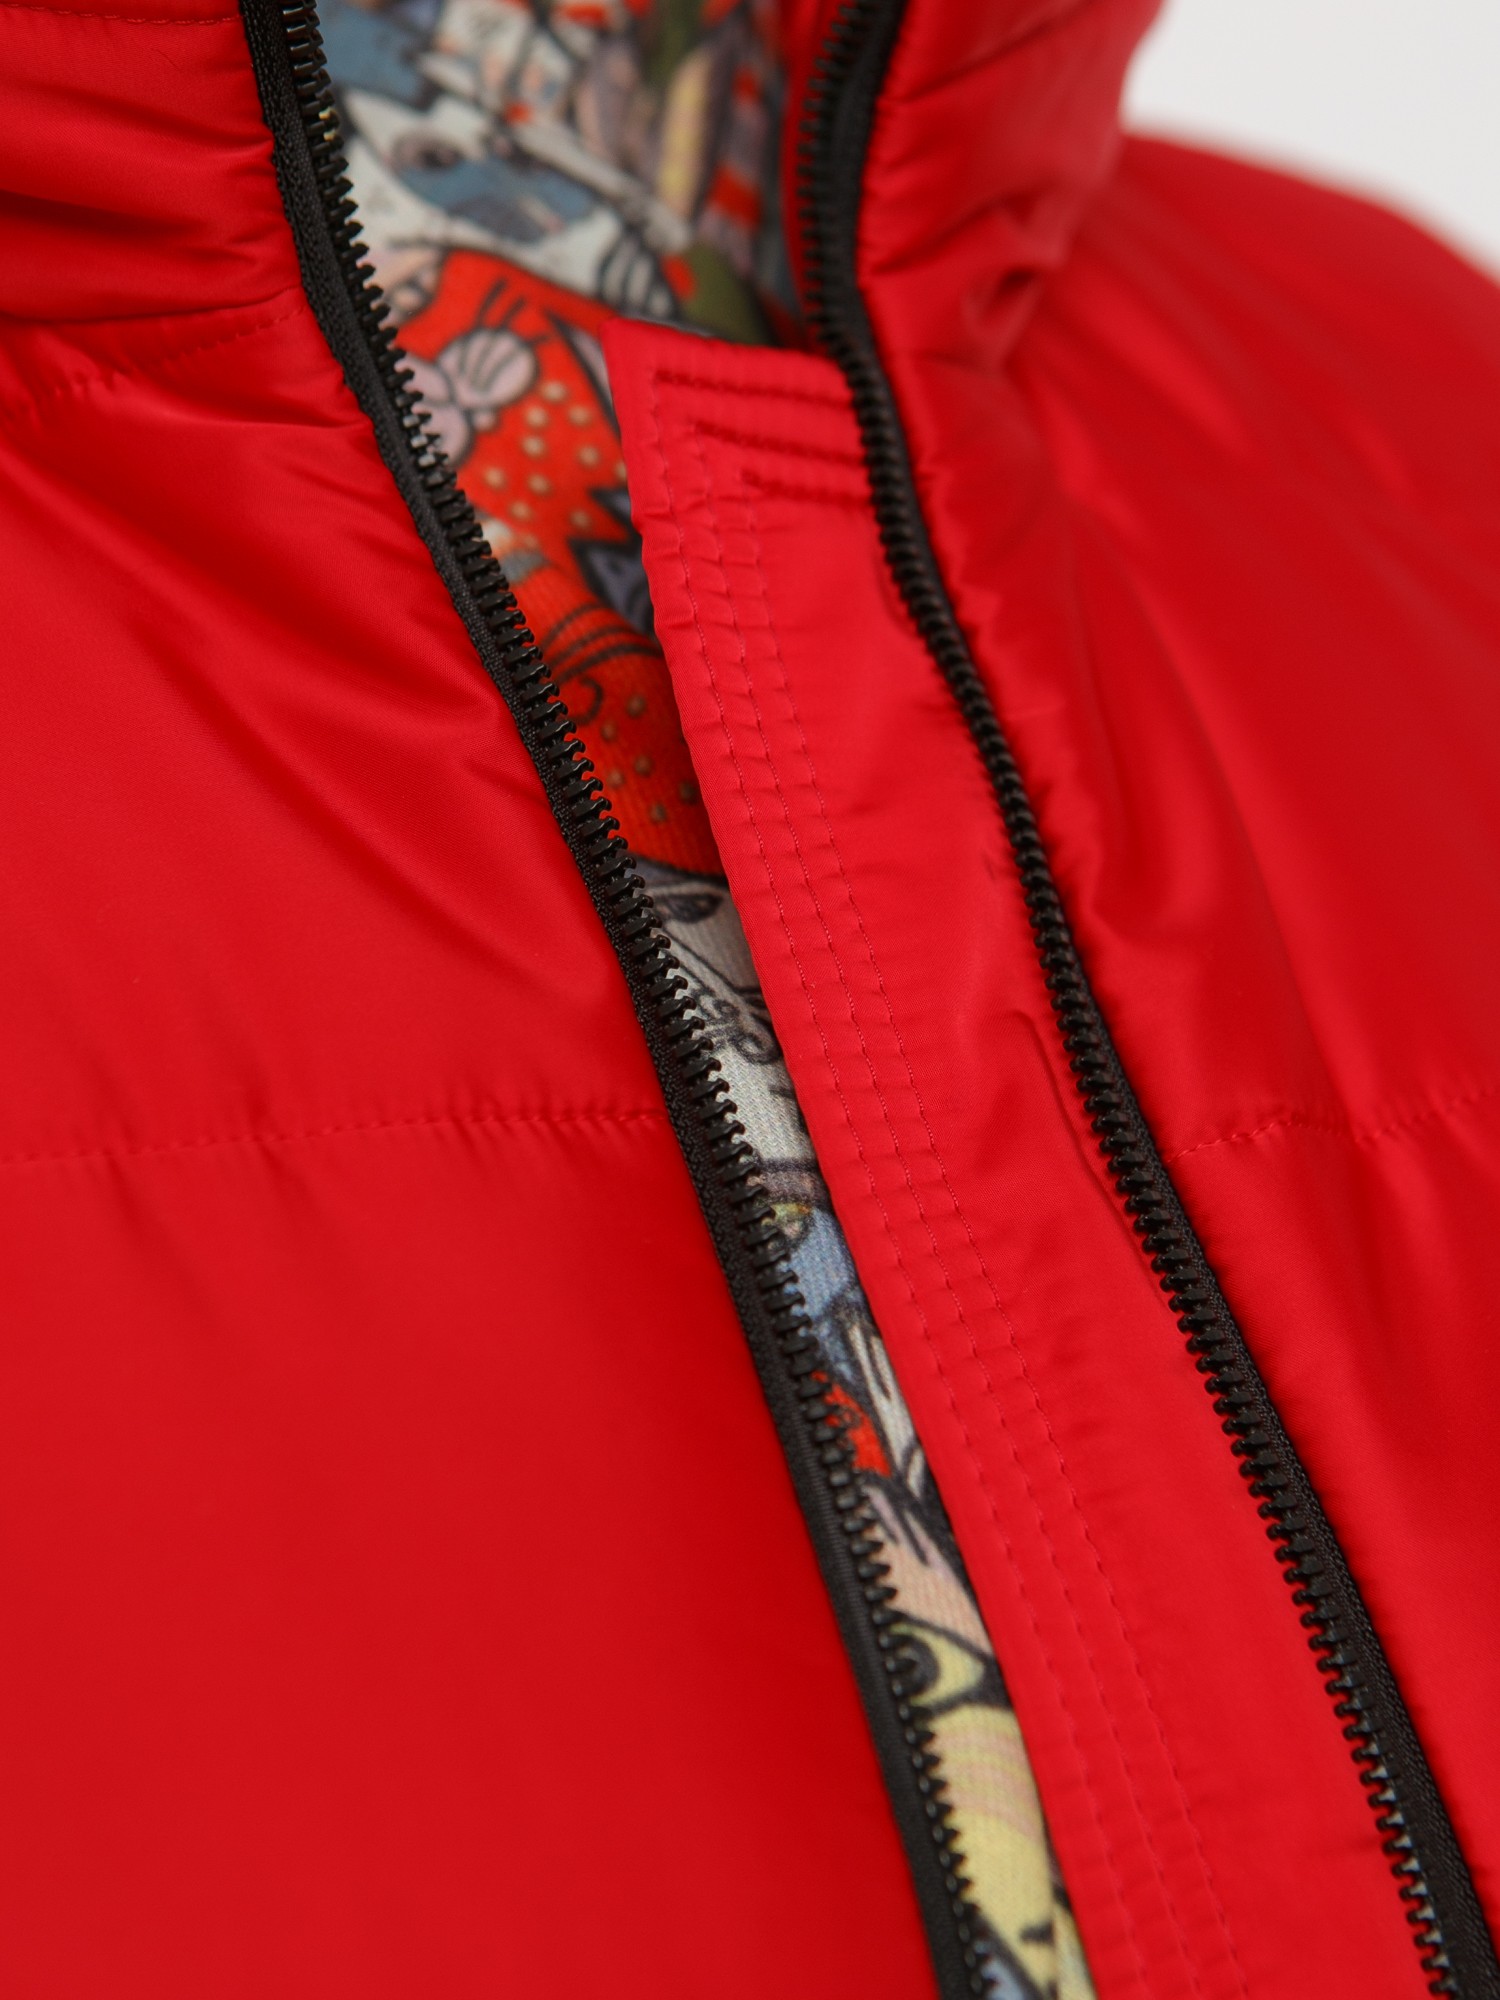 Пальто из комбинированной стеганной ткани черного цвета с брендированными лентами, цвет красный в интернет-магазине Фабрики Тревери